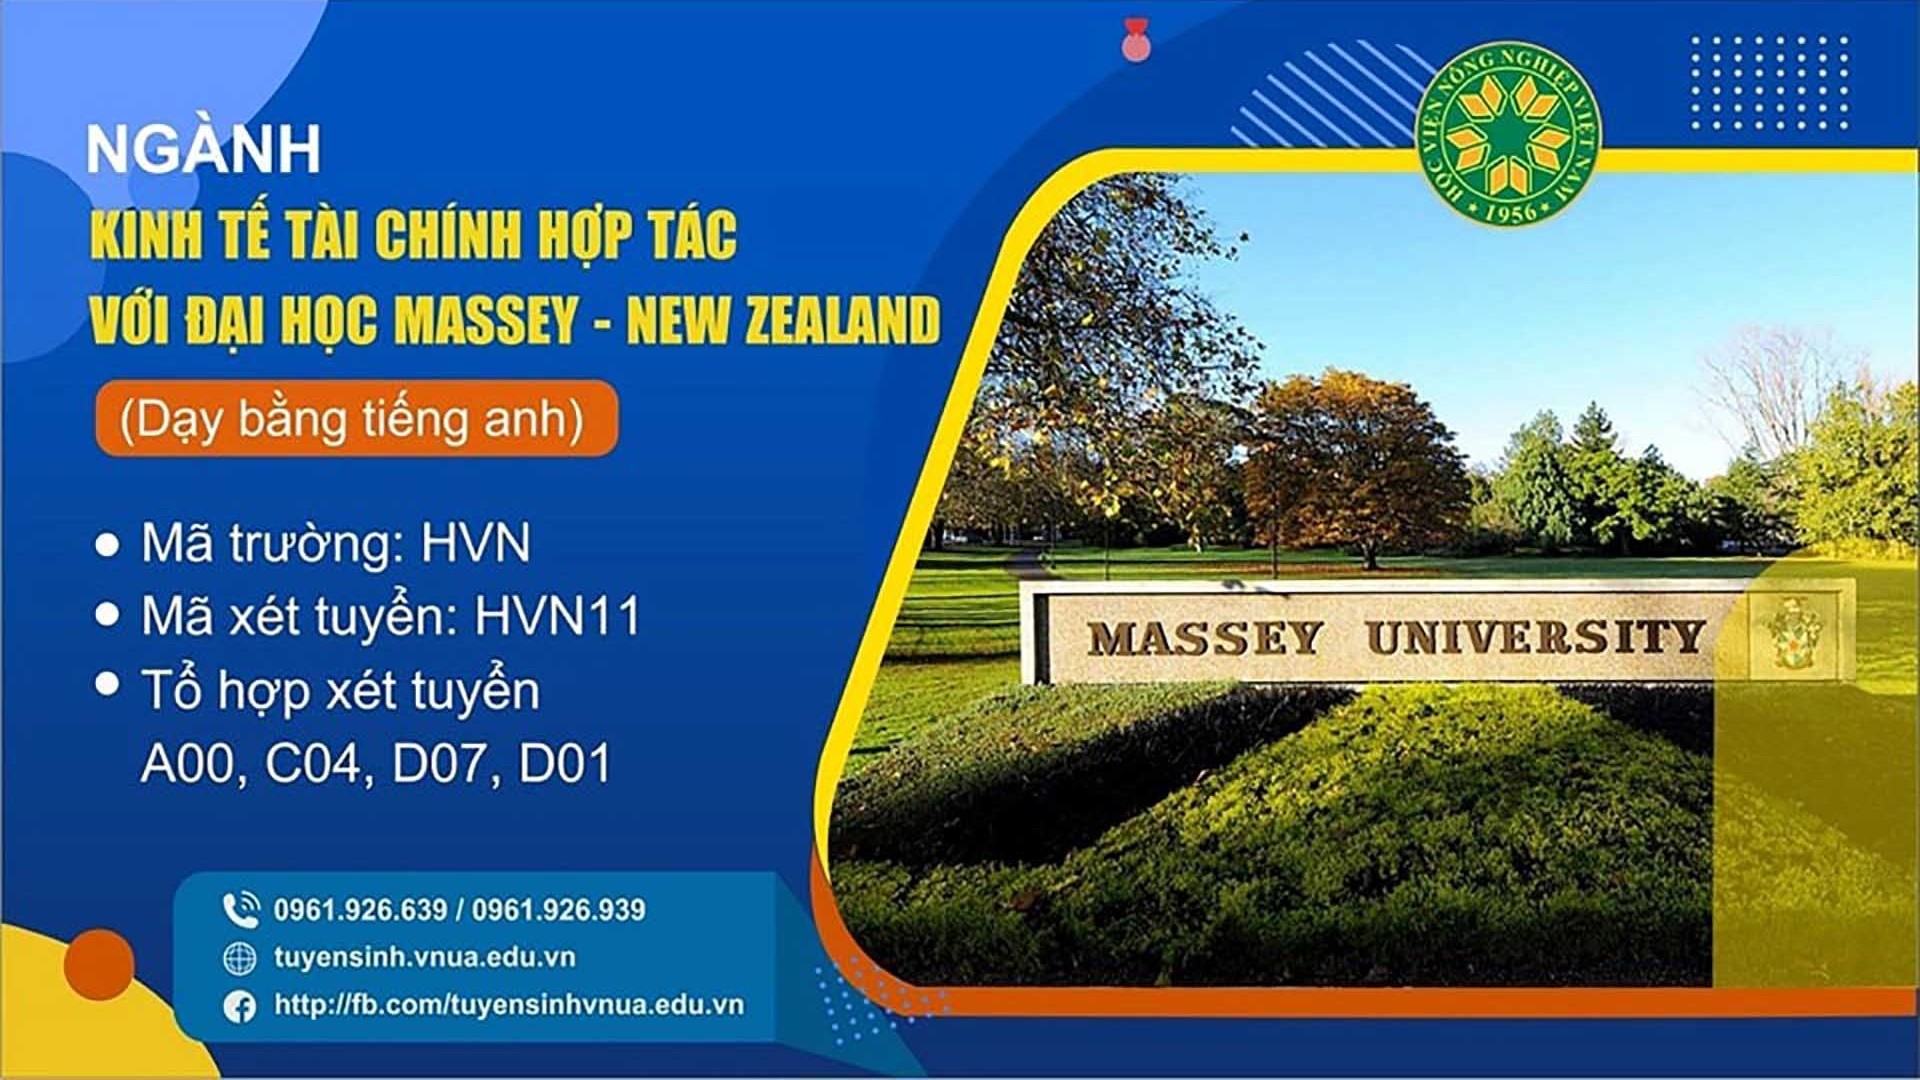 Liên kết quốc tế đào tạo cử nhân kinh tế - tài chính giữa Đại học Massey, New Zealand và Học viện Nông nghiệp Việt Nam